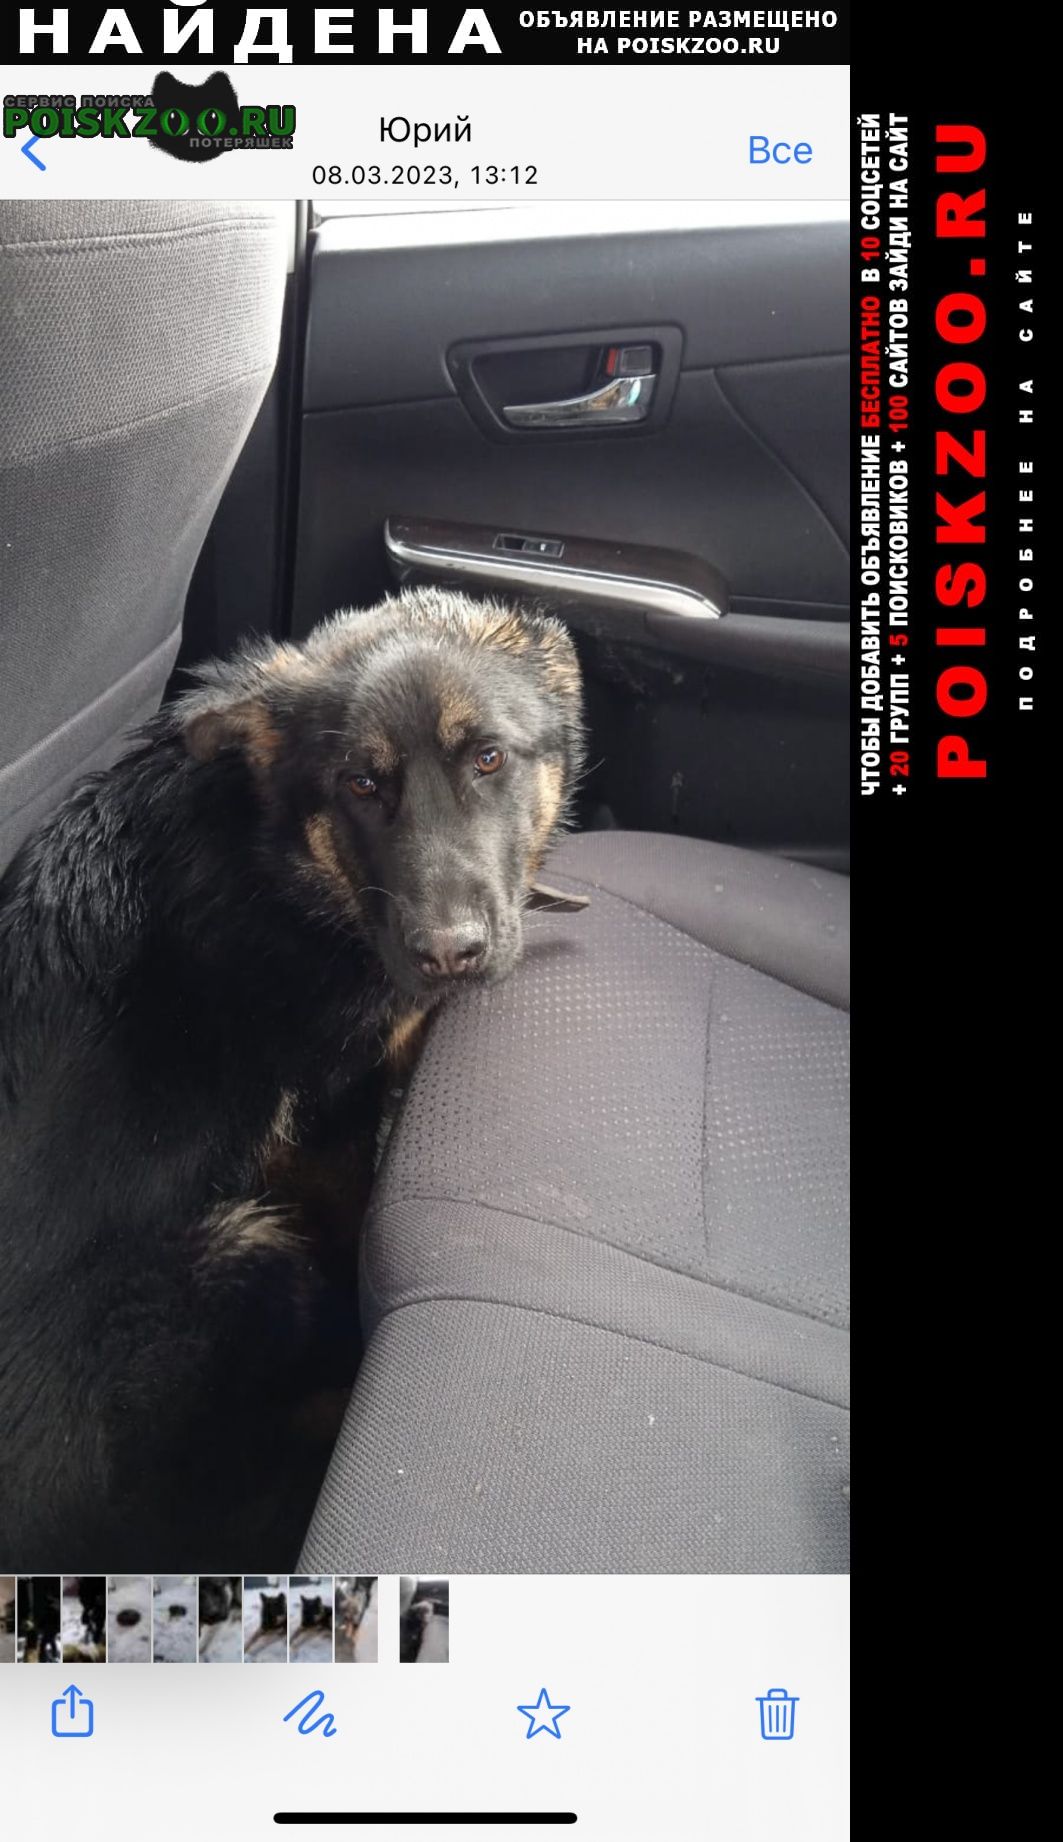 Найдена собака на киевском шоссе Москва